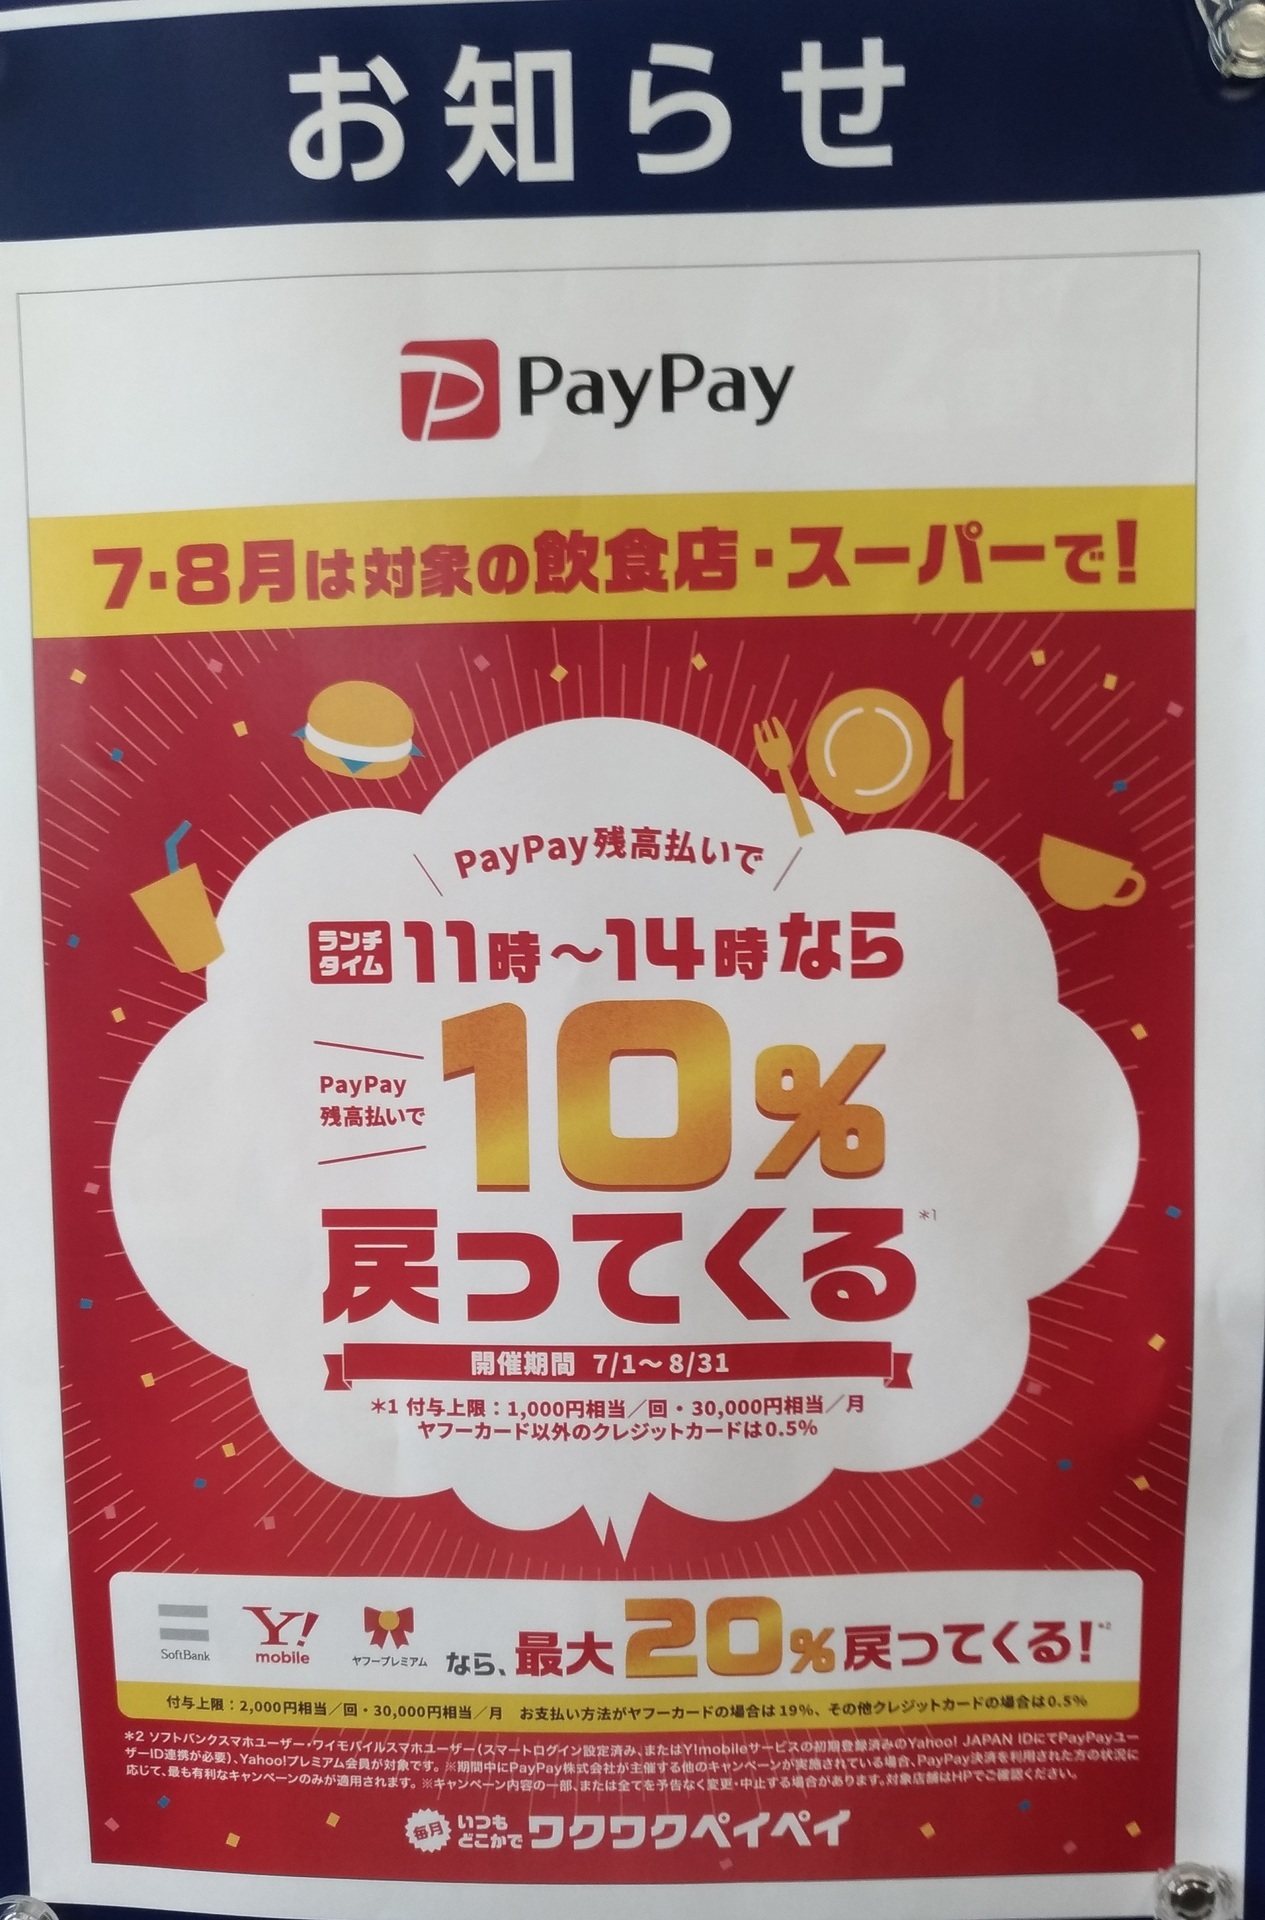 sumaho_PayPay_life_app.jpg